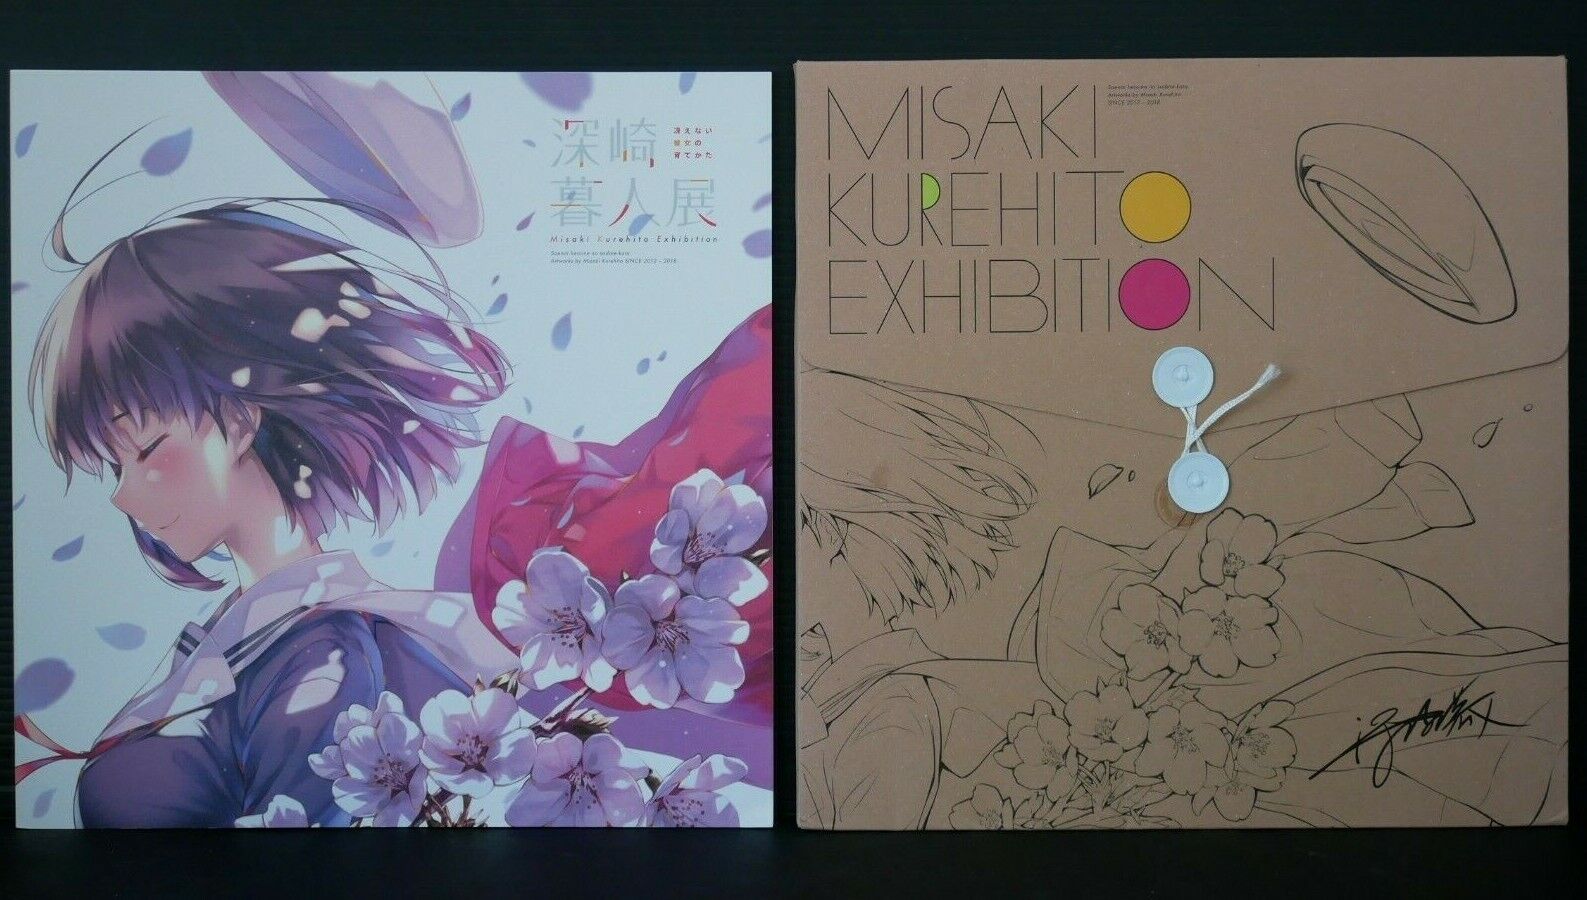 Saekano: How to Raise a Boring Girlfriend Misaki Kurehito Exhibition Pamphlet